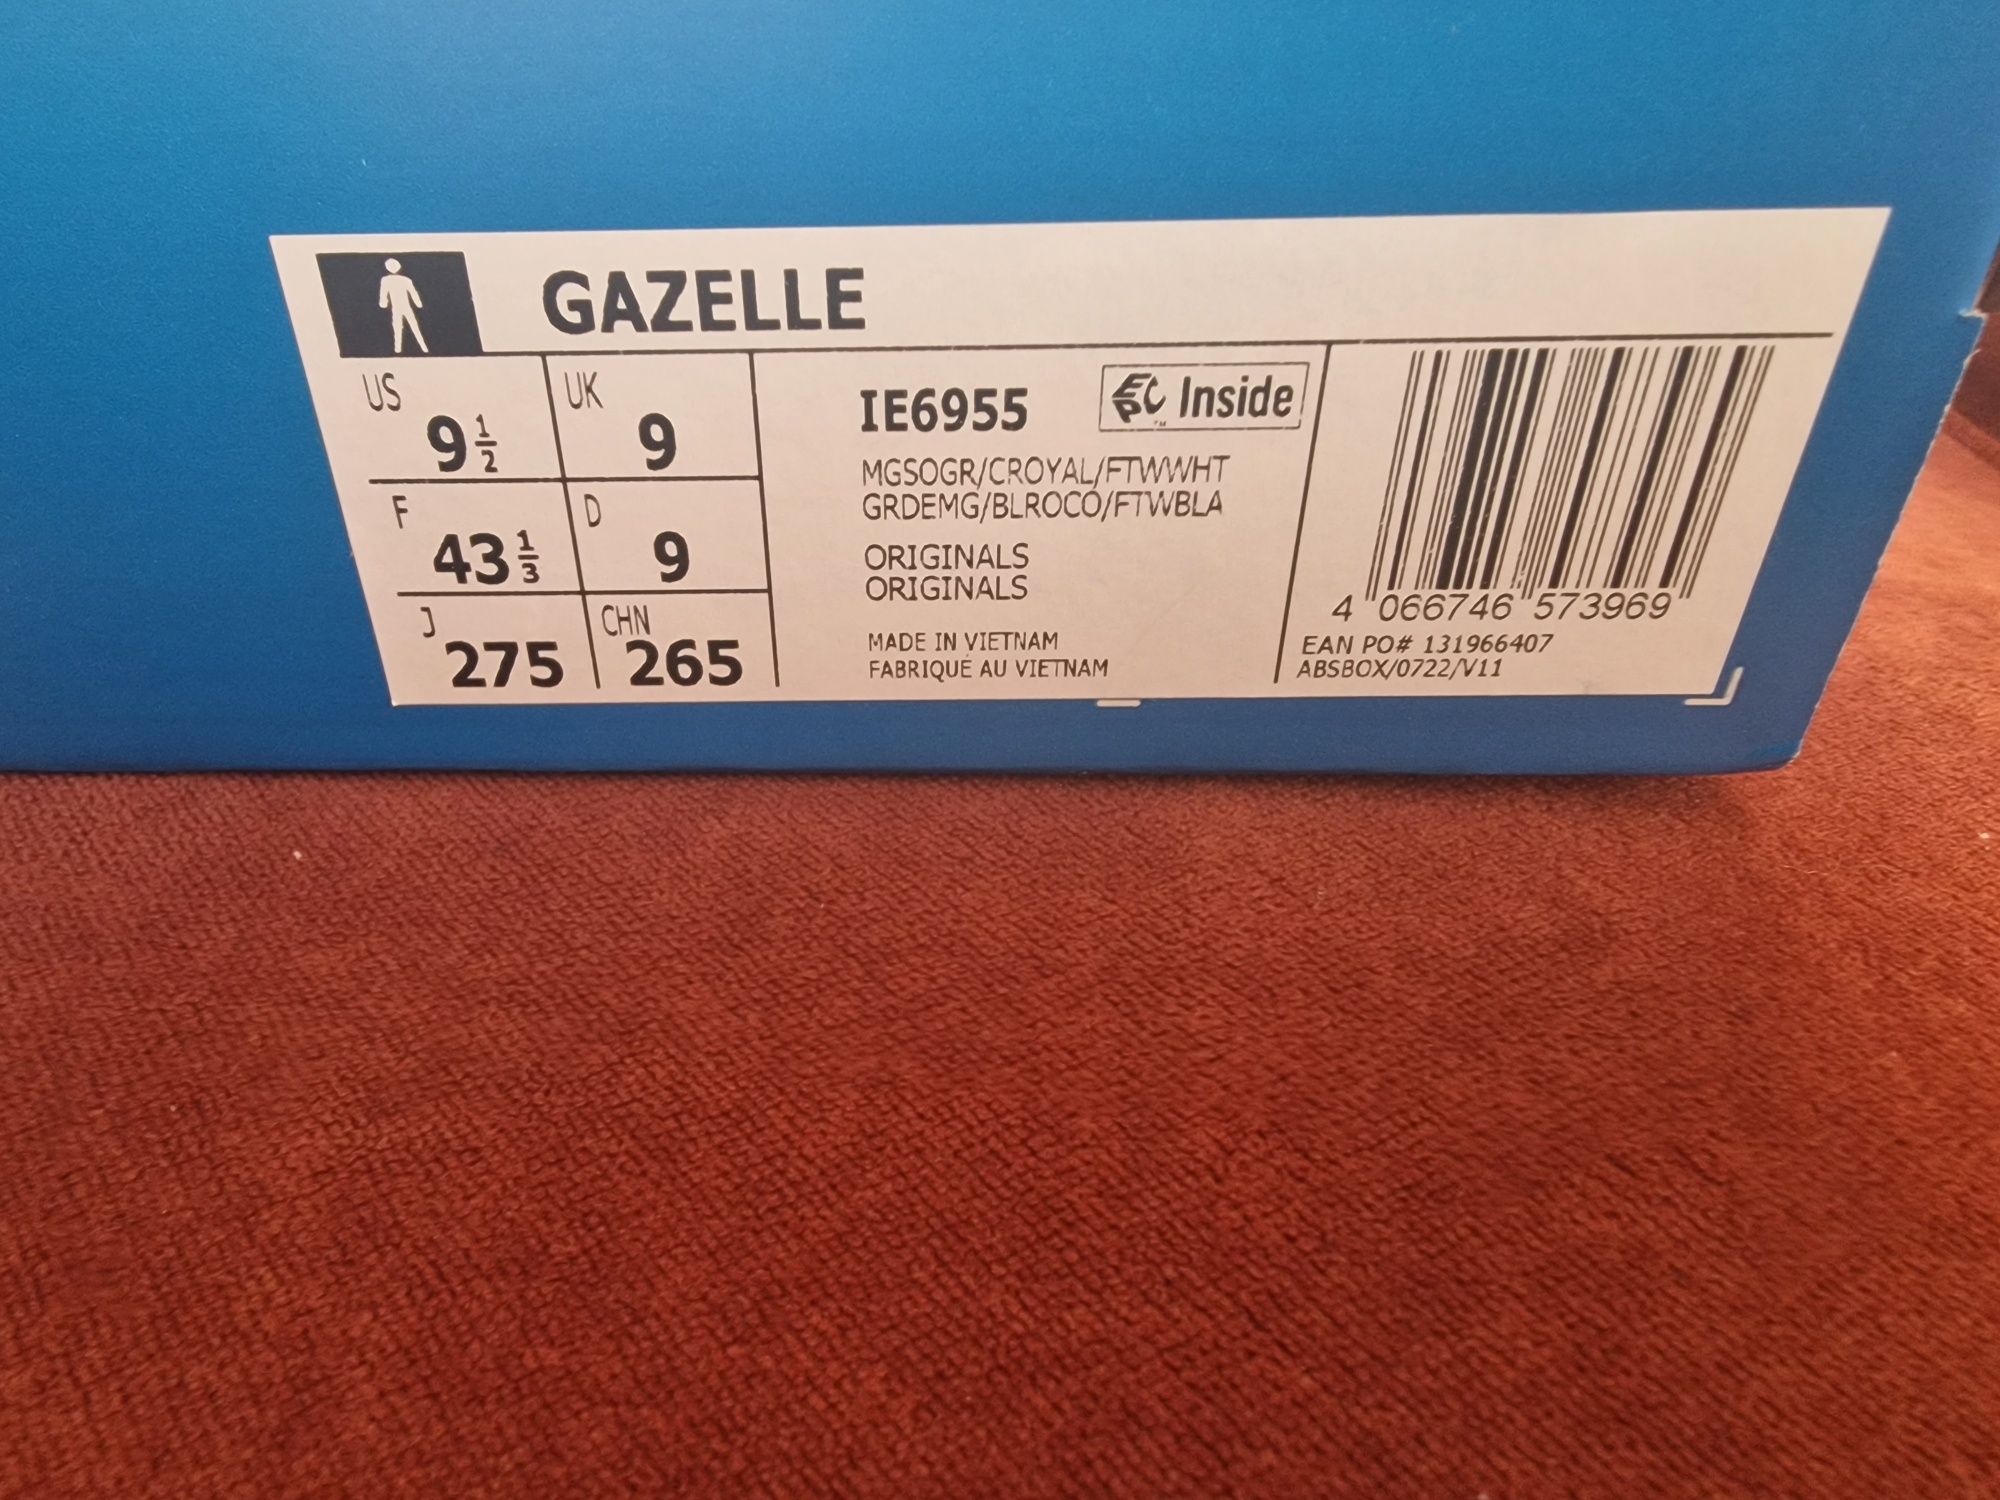 Adidas Gazelle 43 1/3